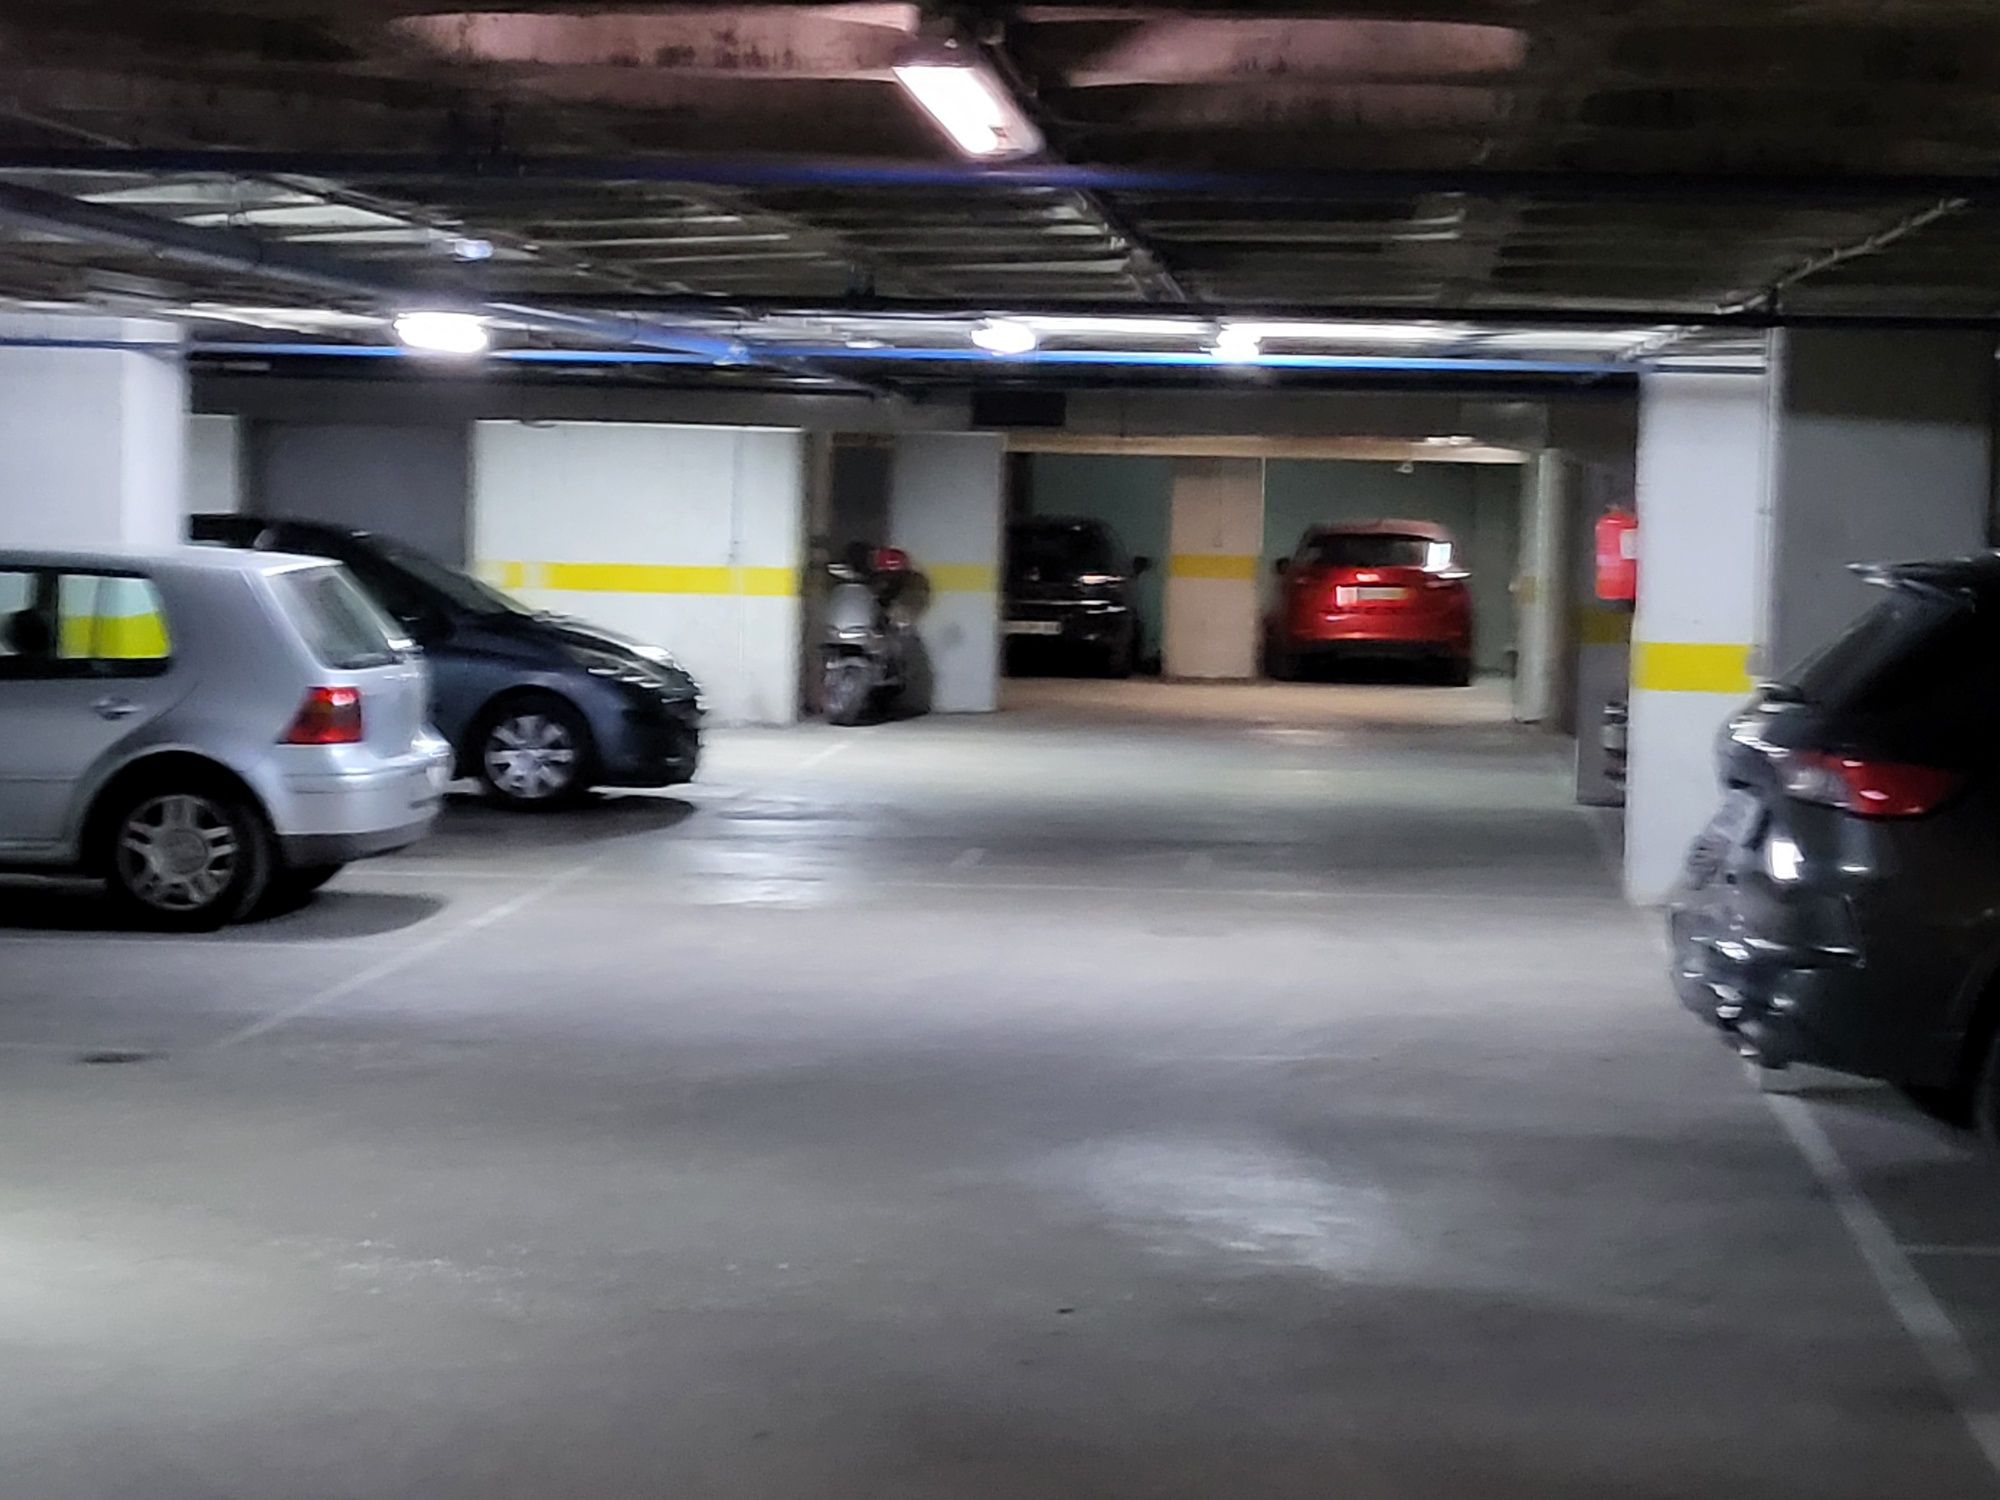 Parqueamento Estacionamento Benfica com Fatura